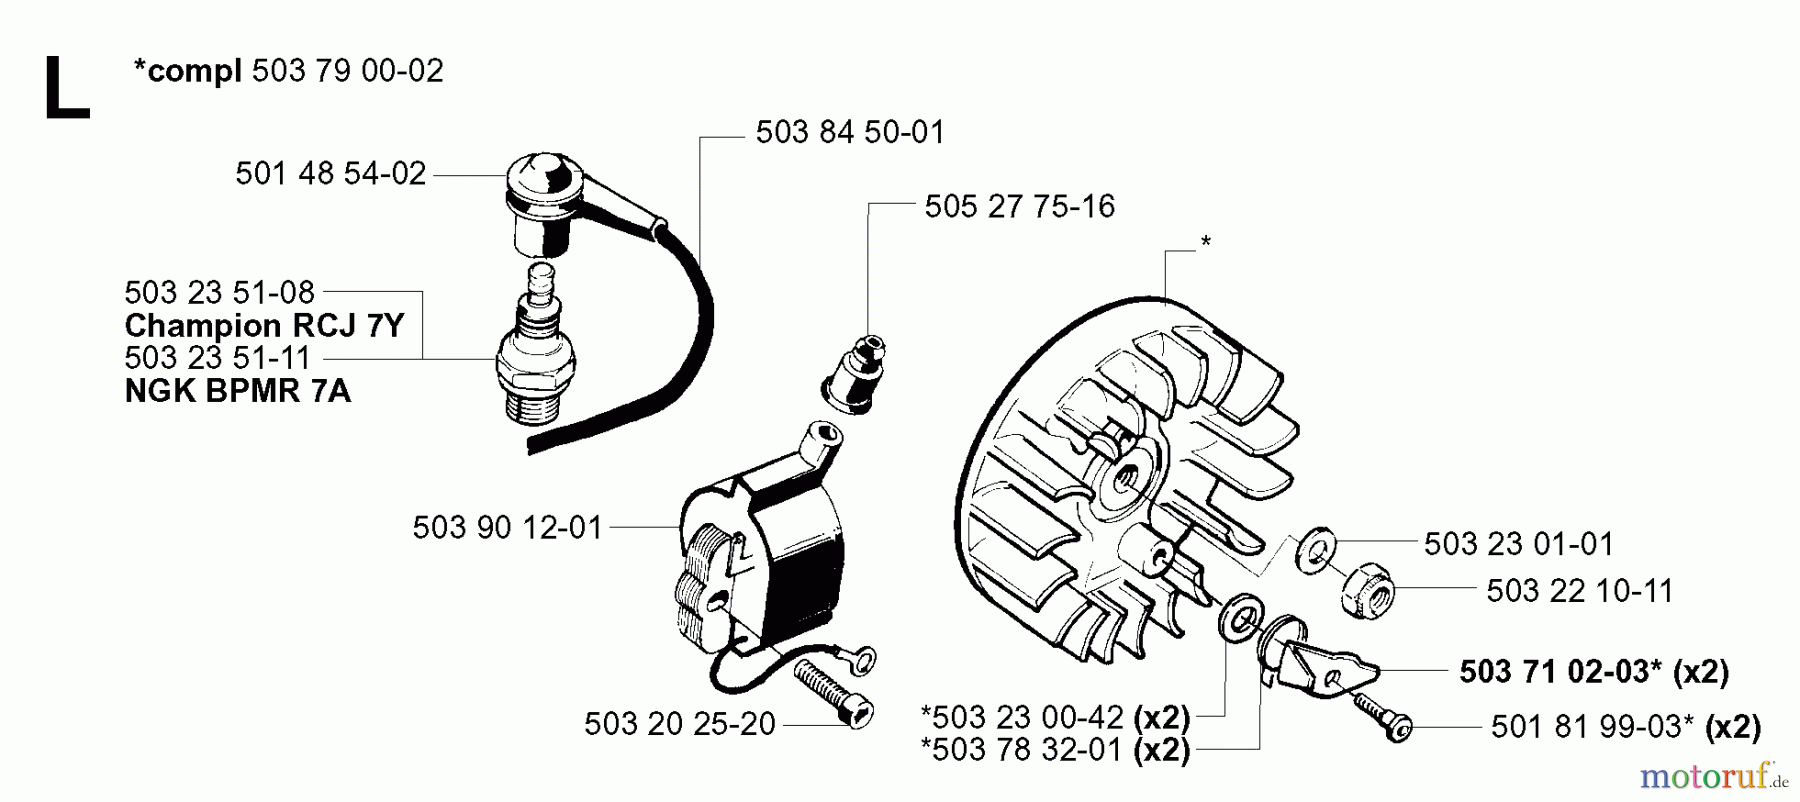  Jonsered Motorsensen, Trimmer GR41 EPA - Jonsered String/Brush Trimmer (2001-03) IGNITION SYSTEM